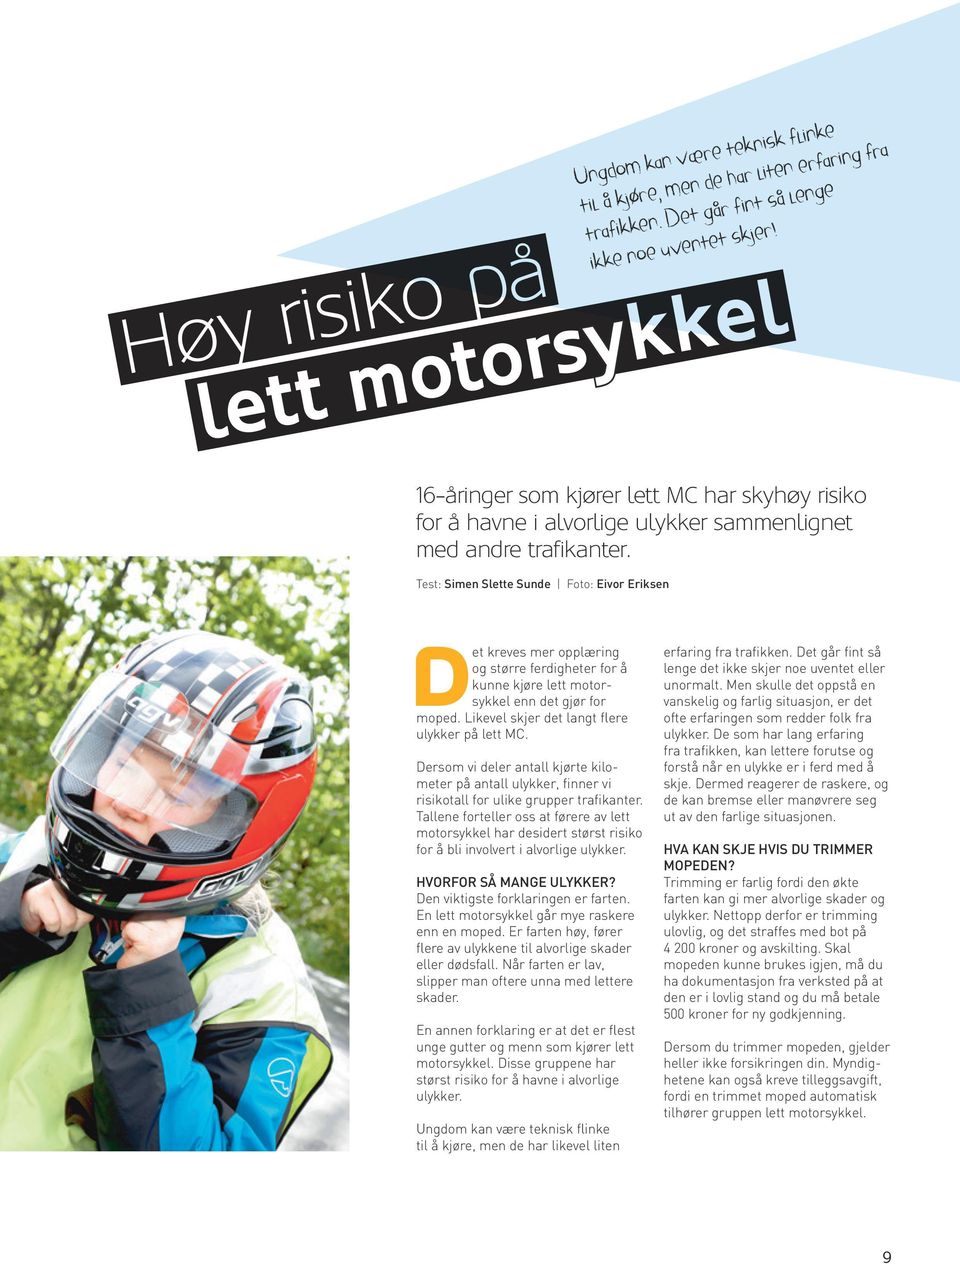 Test: Simen Slette Sunde Foto: Eivor Eriksen Det kreves mer opplæring og større ferdigheter for å kunne kjøre lett motorsykkel enn det gjør for moped. Likevel skjer det langt flere ulykker på lett MC.